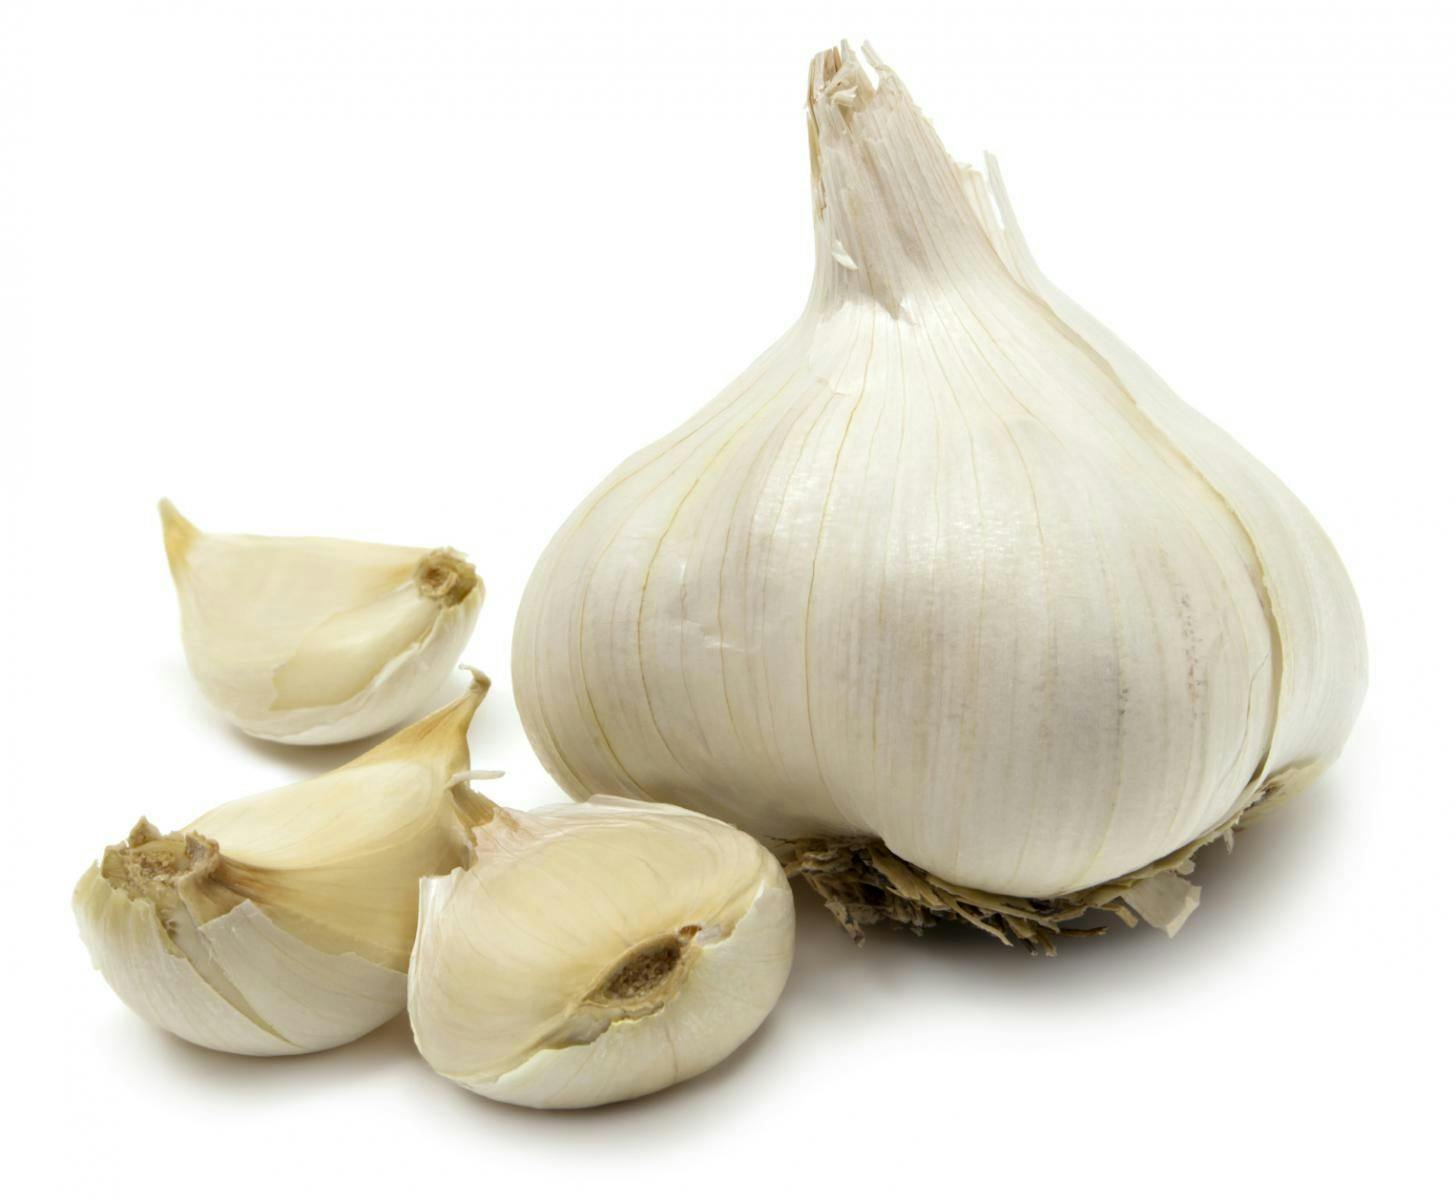 Meta-Analysis on Garlic and Cholesterol Management